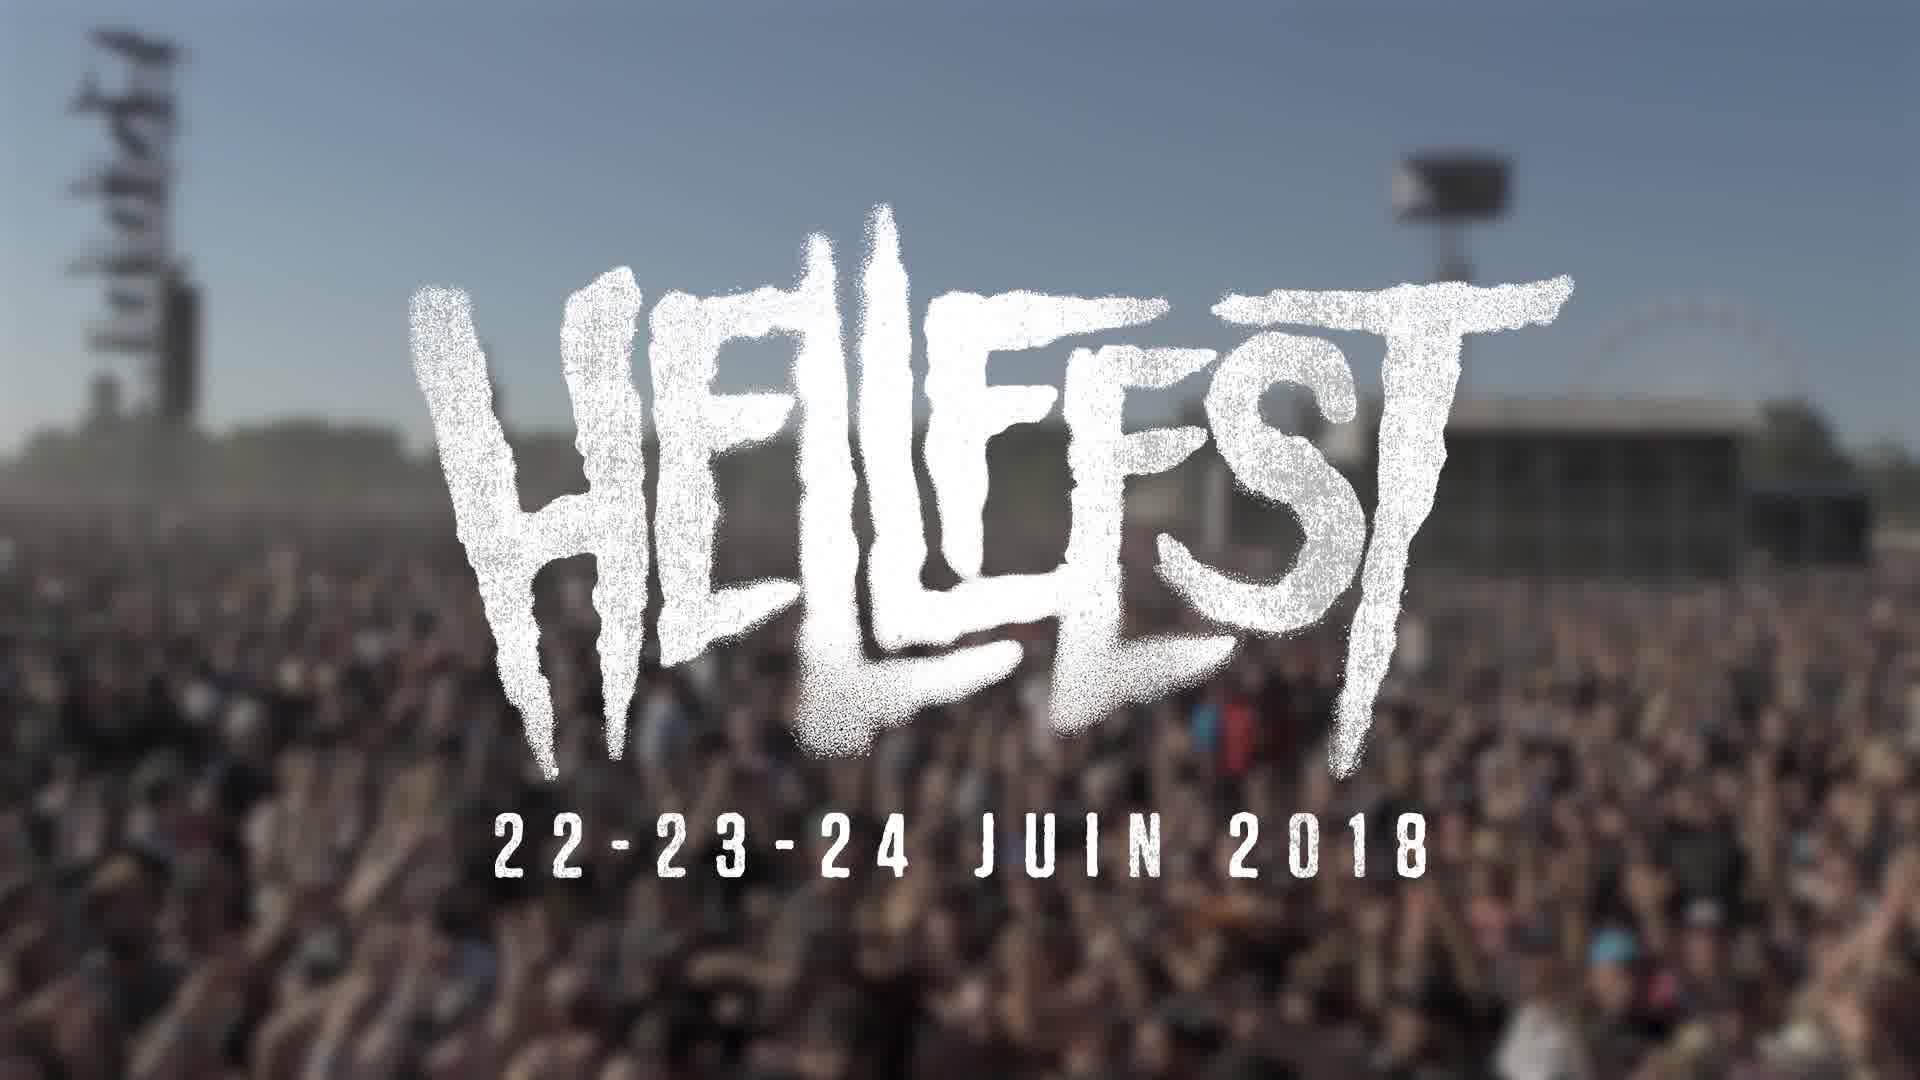 Hellfest 2018